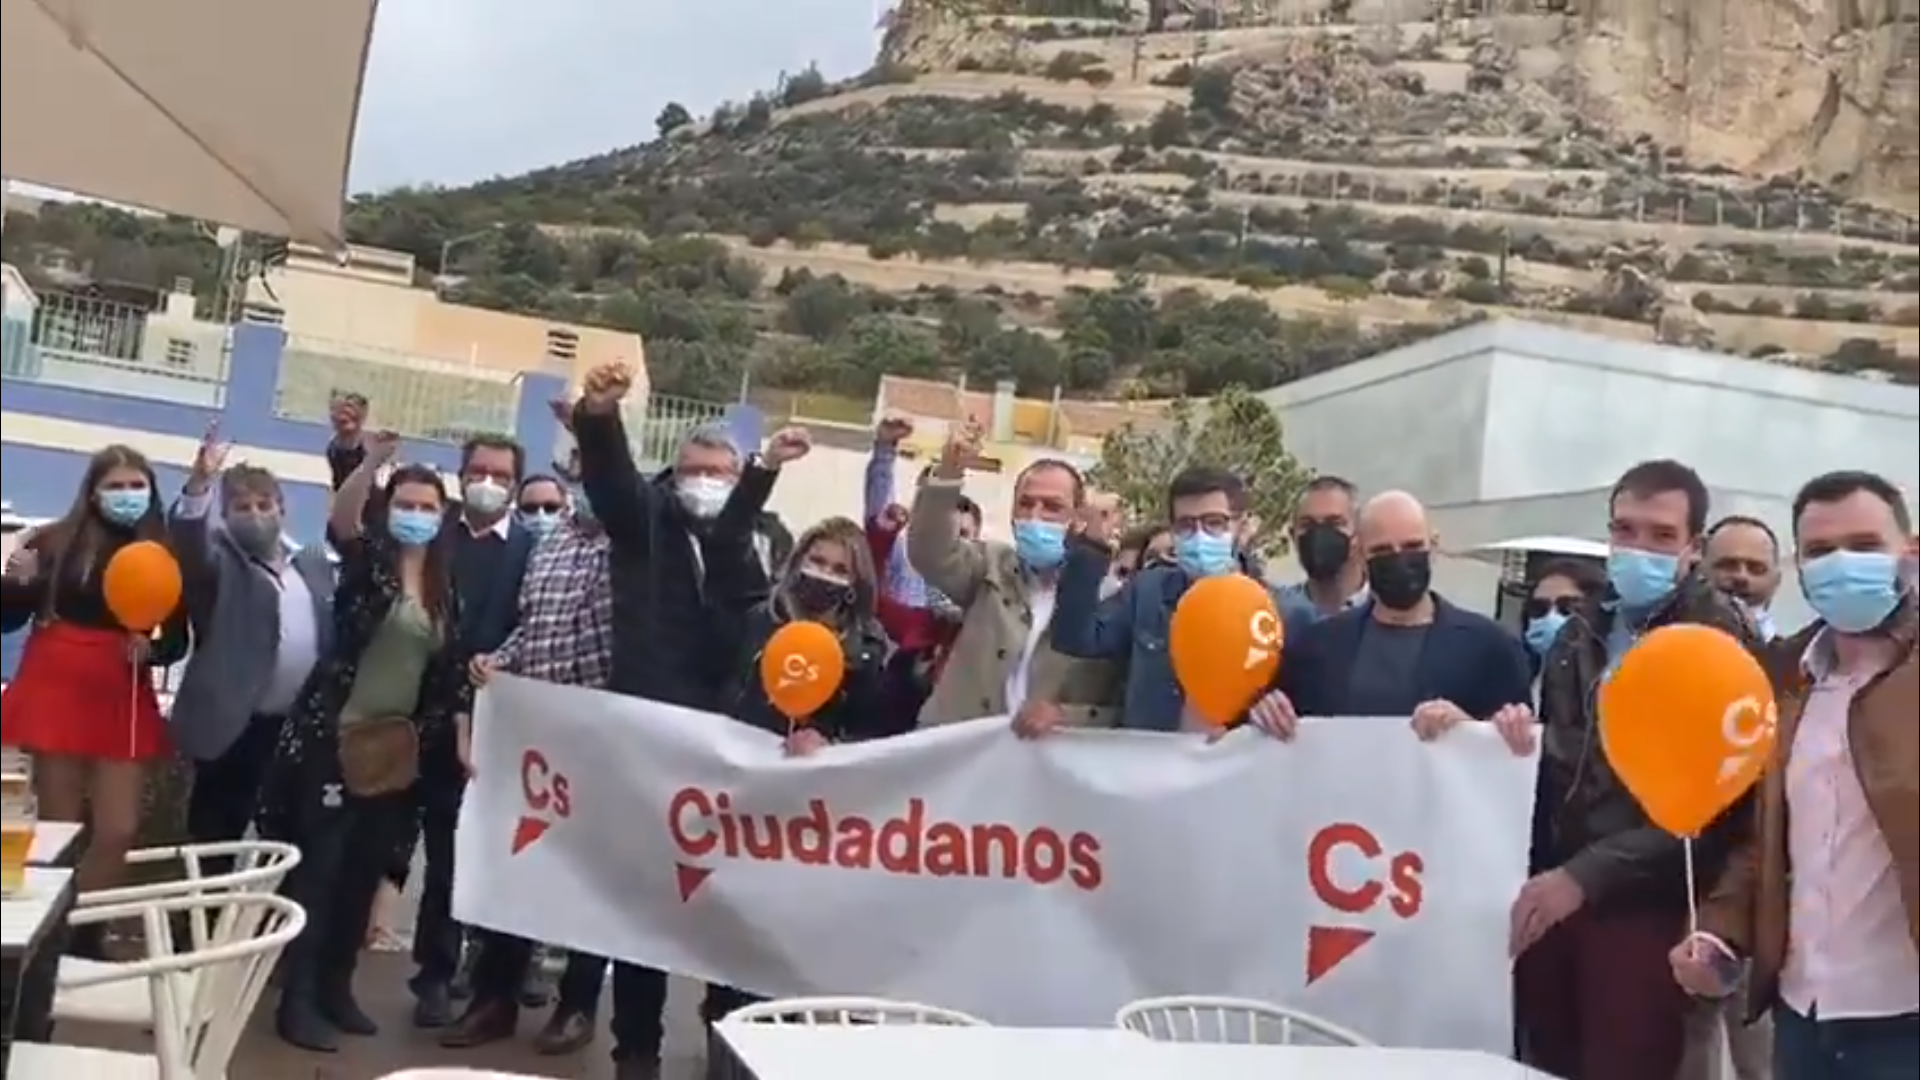 Ciutadans menosprecia a Alacant y lo tilda de "playa de Madrid"